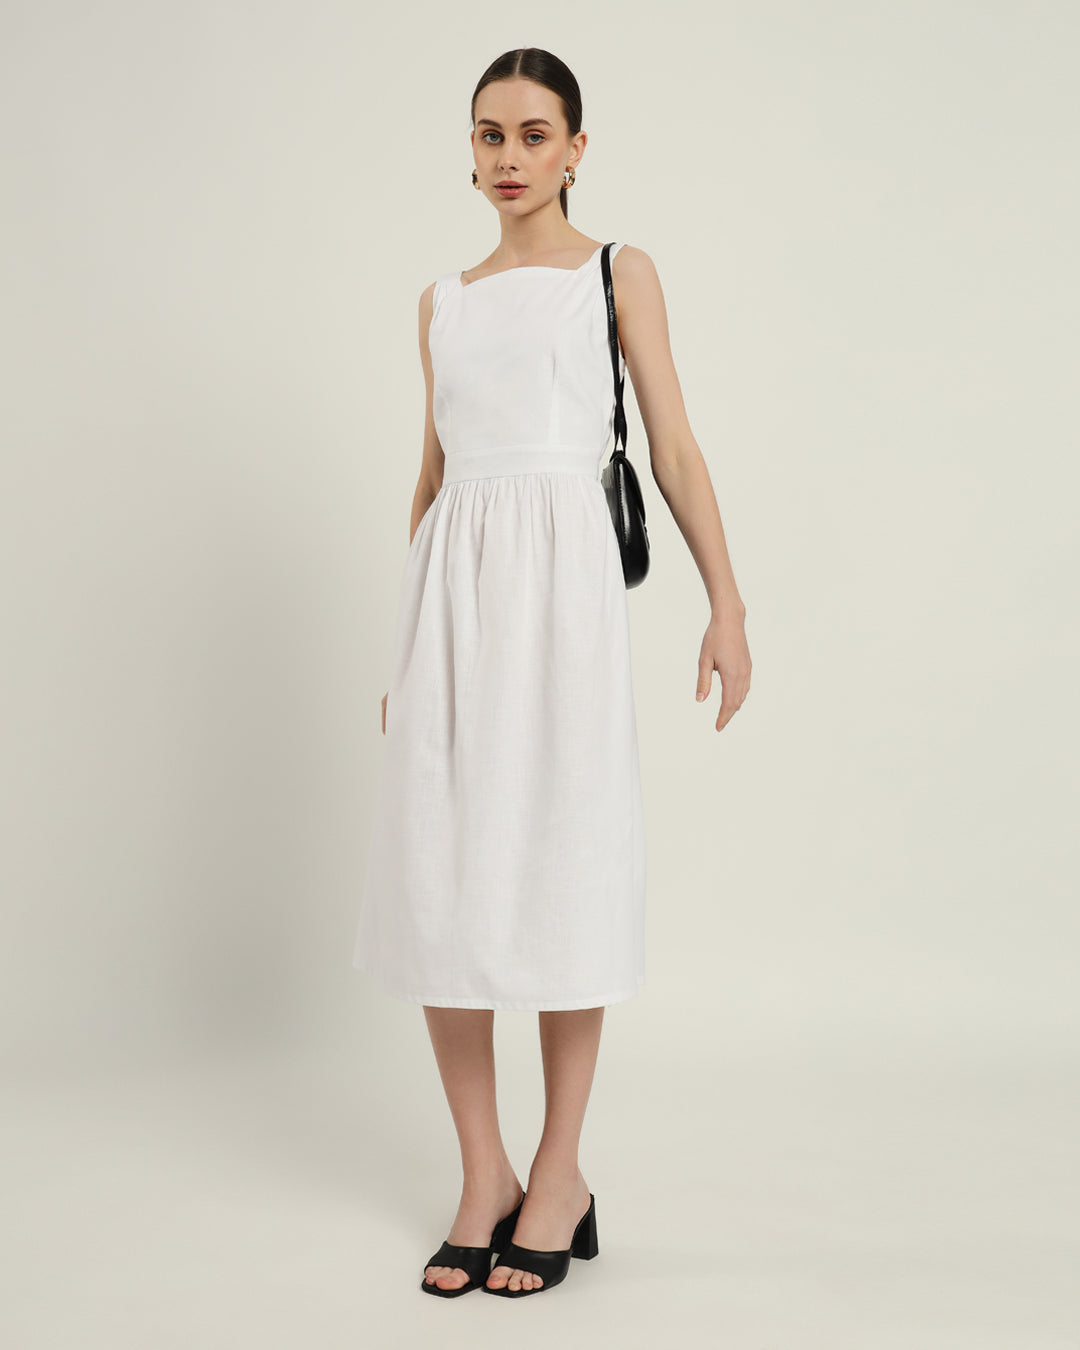 The Mihara Daisy White Linen Dress